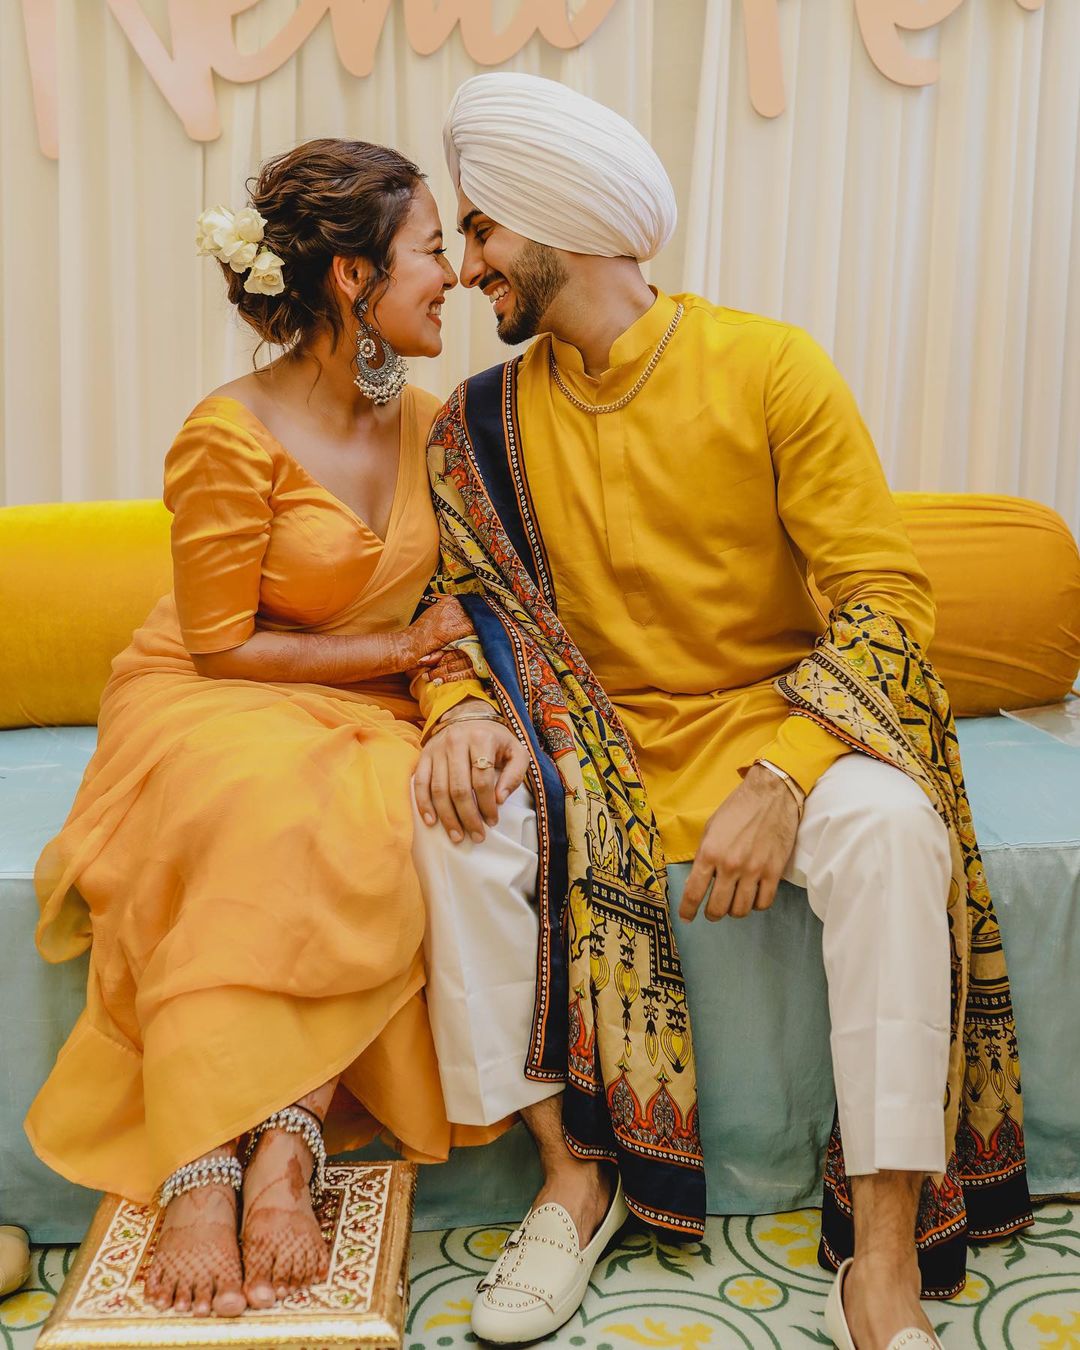 नेहा आणि रोहन दिल्लीत लग्न करणार असून गुरुवारी नेहाचं संपूर्ण कुटुंब मुंबईहून दिल्लीला रवाना झालं.